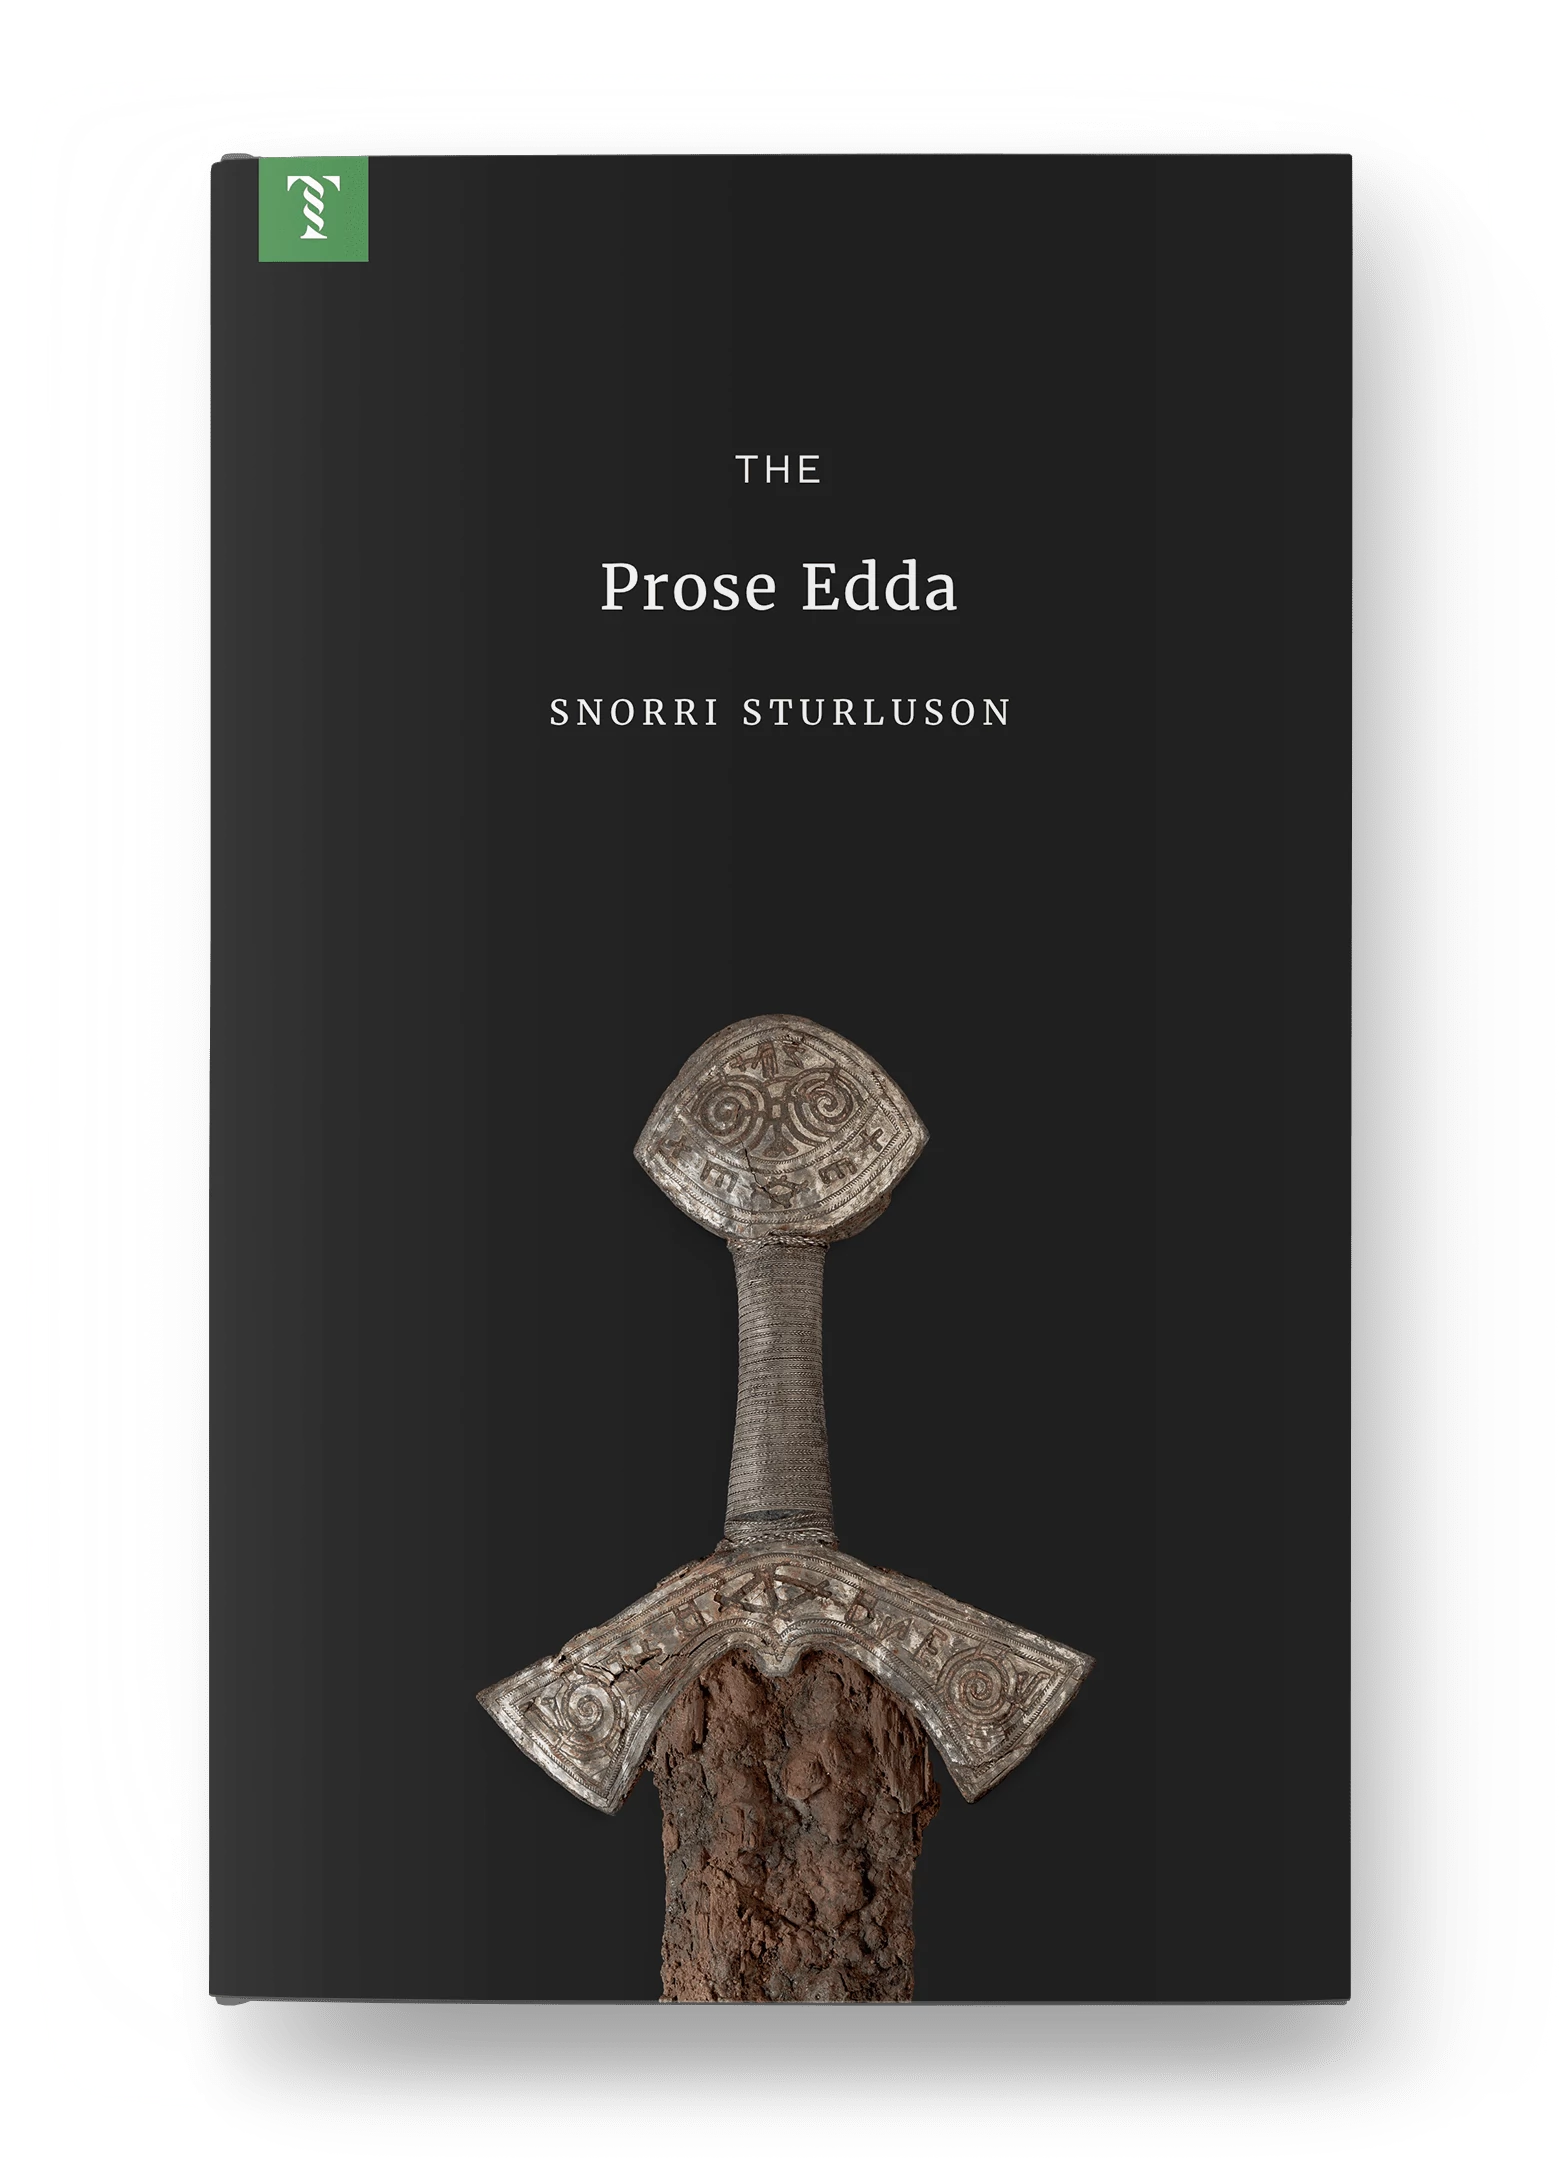 The Prose Edda, Viking Age